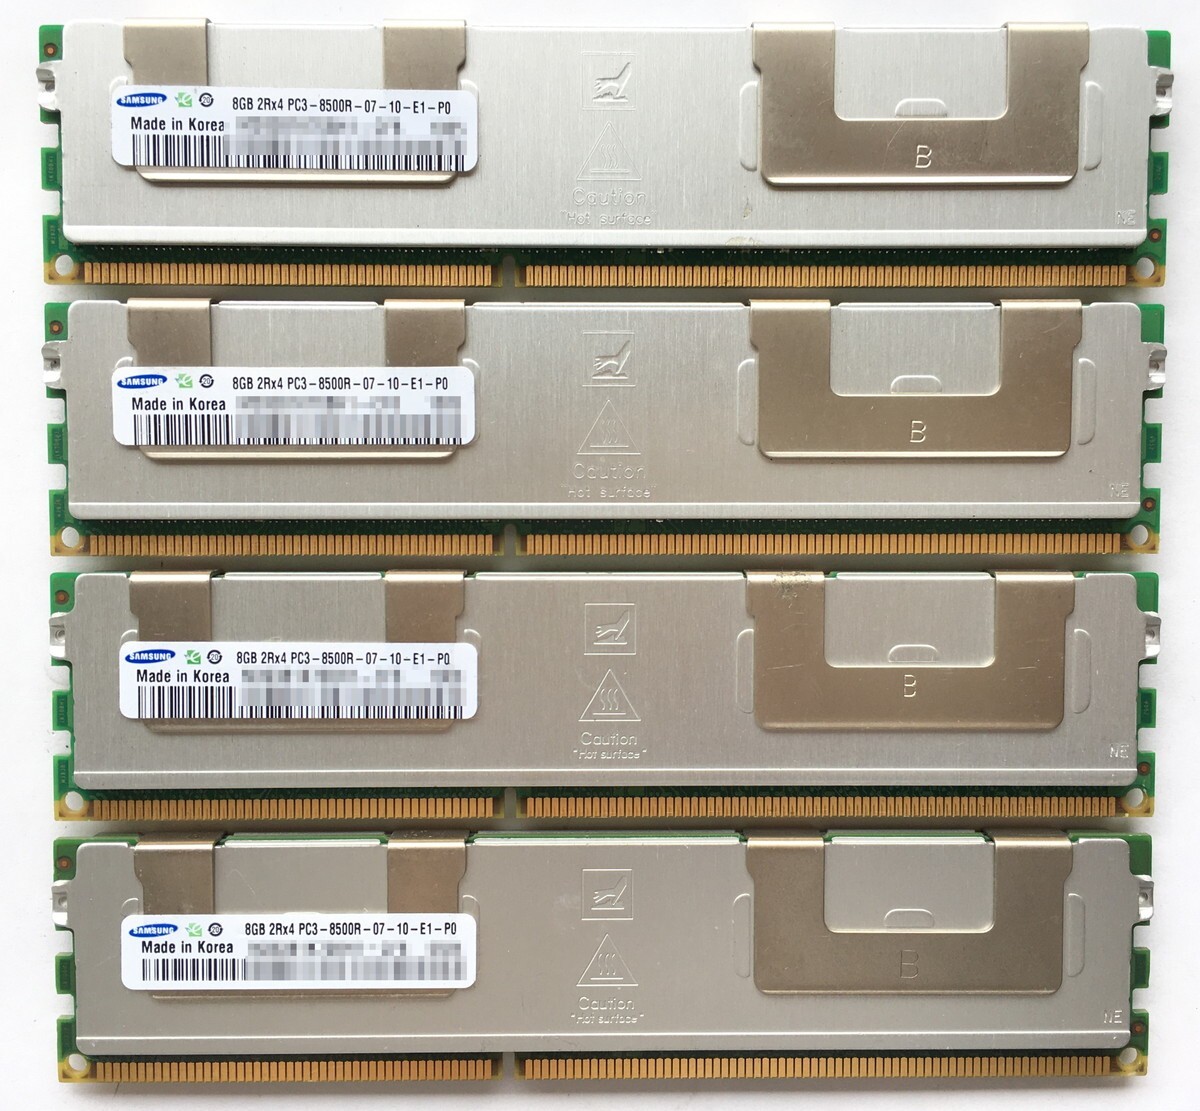 [8G×4 листов комплект ]SAMSUNG PC3-8500R 2R×4 теплоотвод б/у память сервер для DDR3 быстрое решение включая налог отправка в тот же день гарантия работы [MR-S-239]